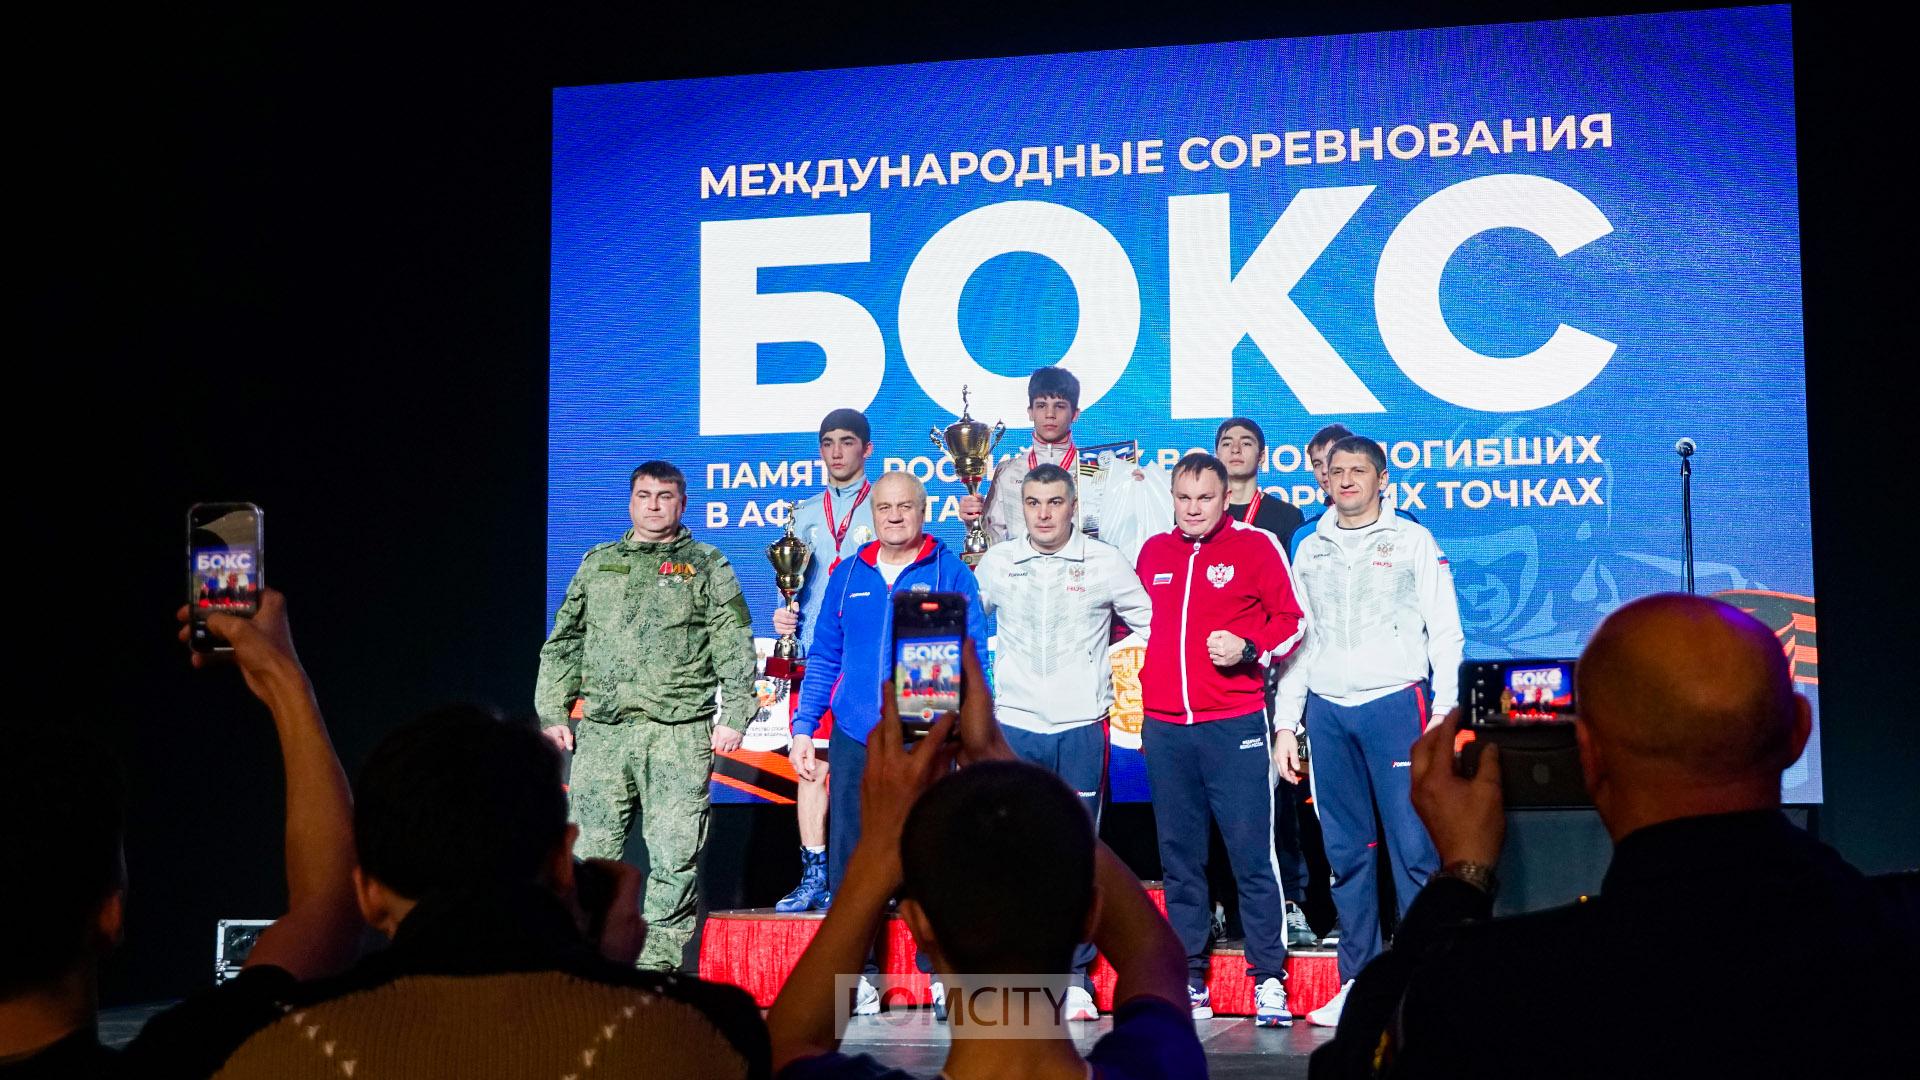 Хабаровчанин Алексей Гуков стал победителем международного боксёрского турнира в Орлане, а комсомольчанин Смолик стал третьим